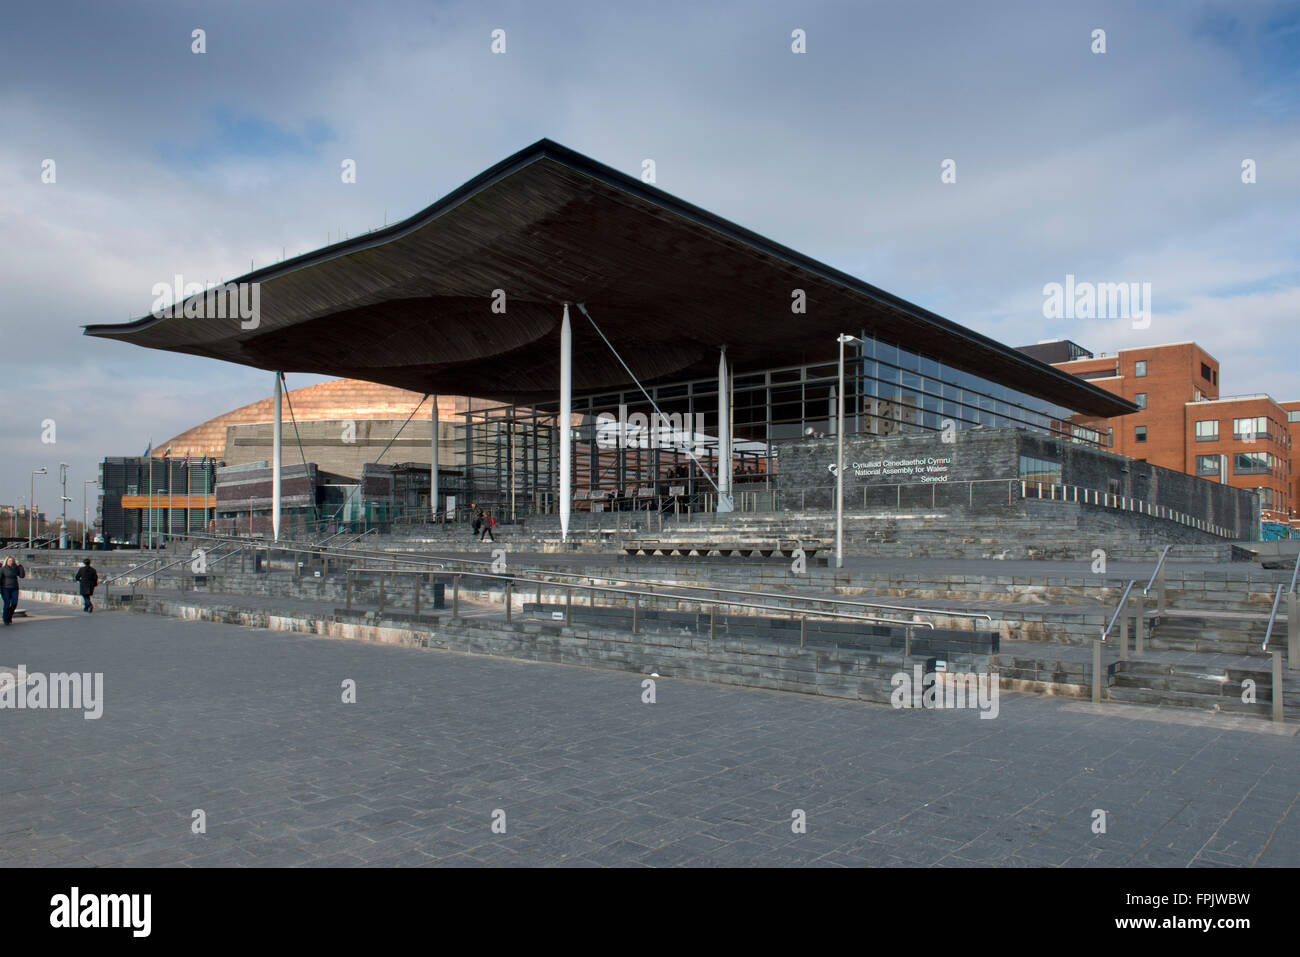 Nationalversammlung für Wales (senedd), cynulliad cenedlaethol Cymru und pierhead Gebäude in der Bucht von Cardiff, Wales, Großbritannien Stockfoto